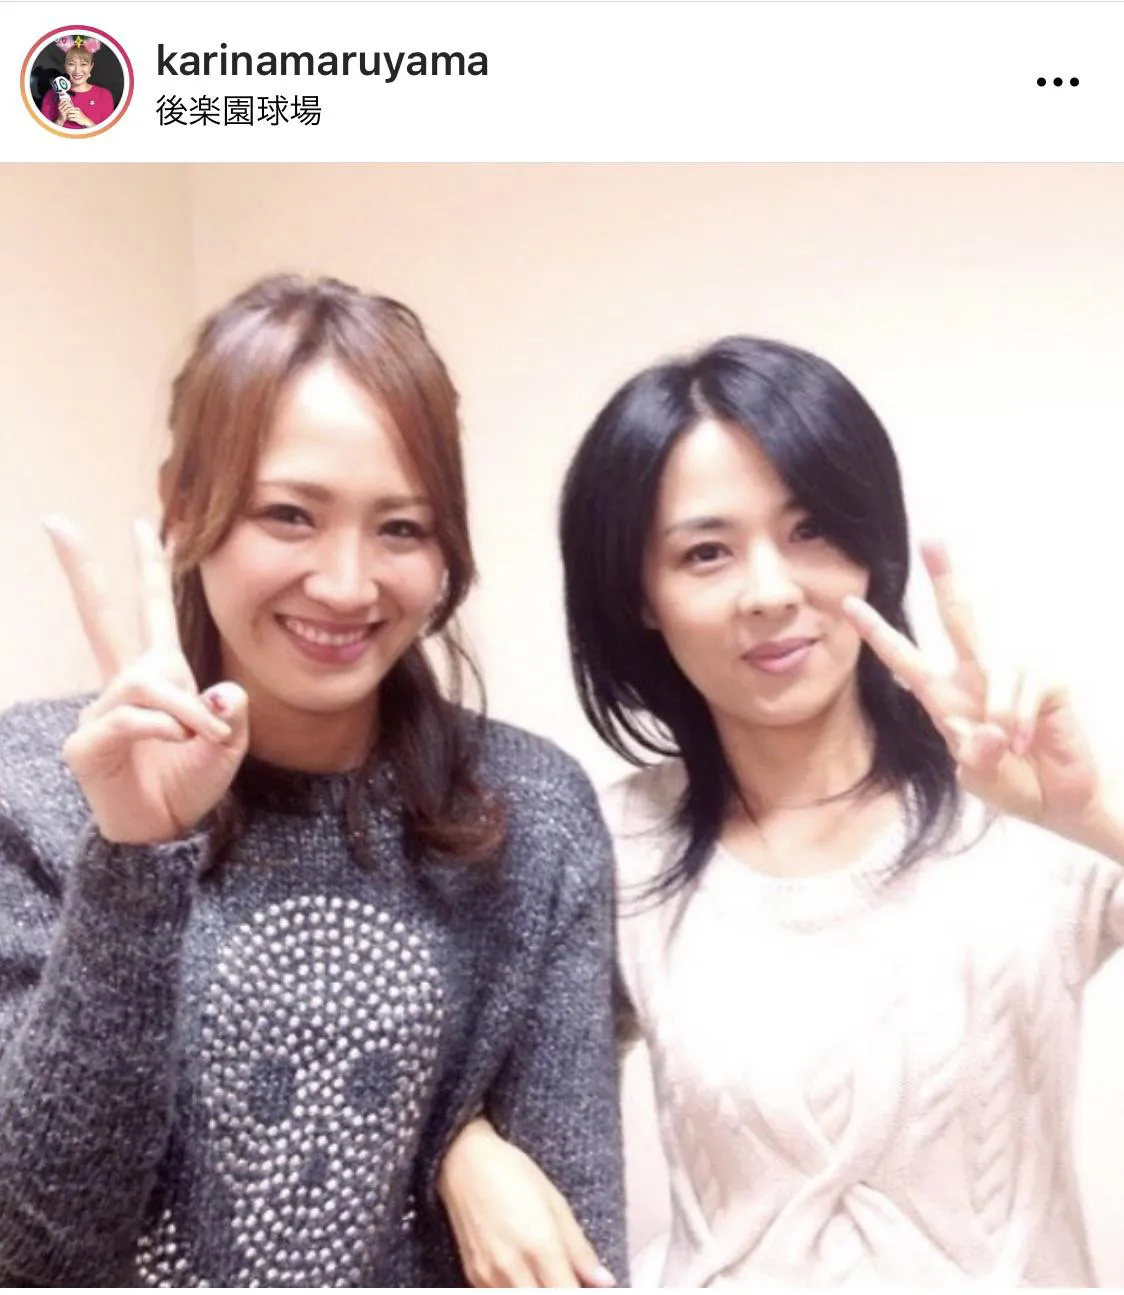 ※丸山桂里奈公式Instagram(karinamaruyama)のスクリーンショット